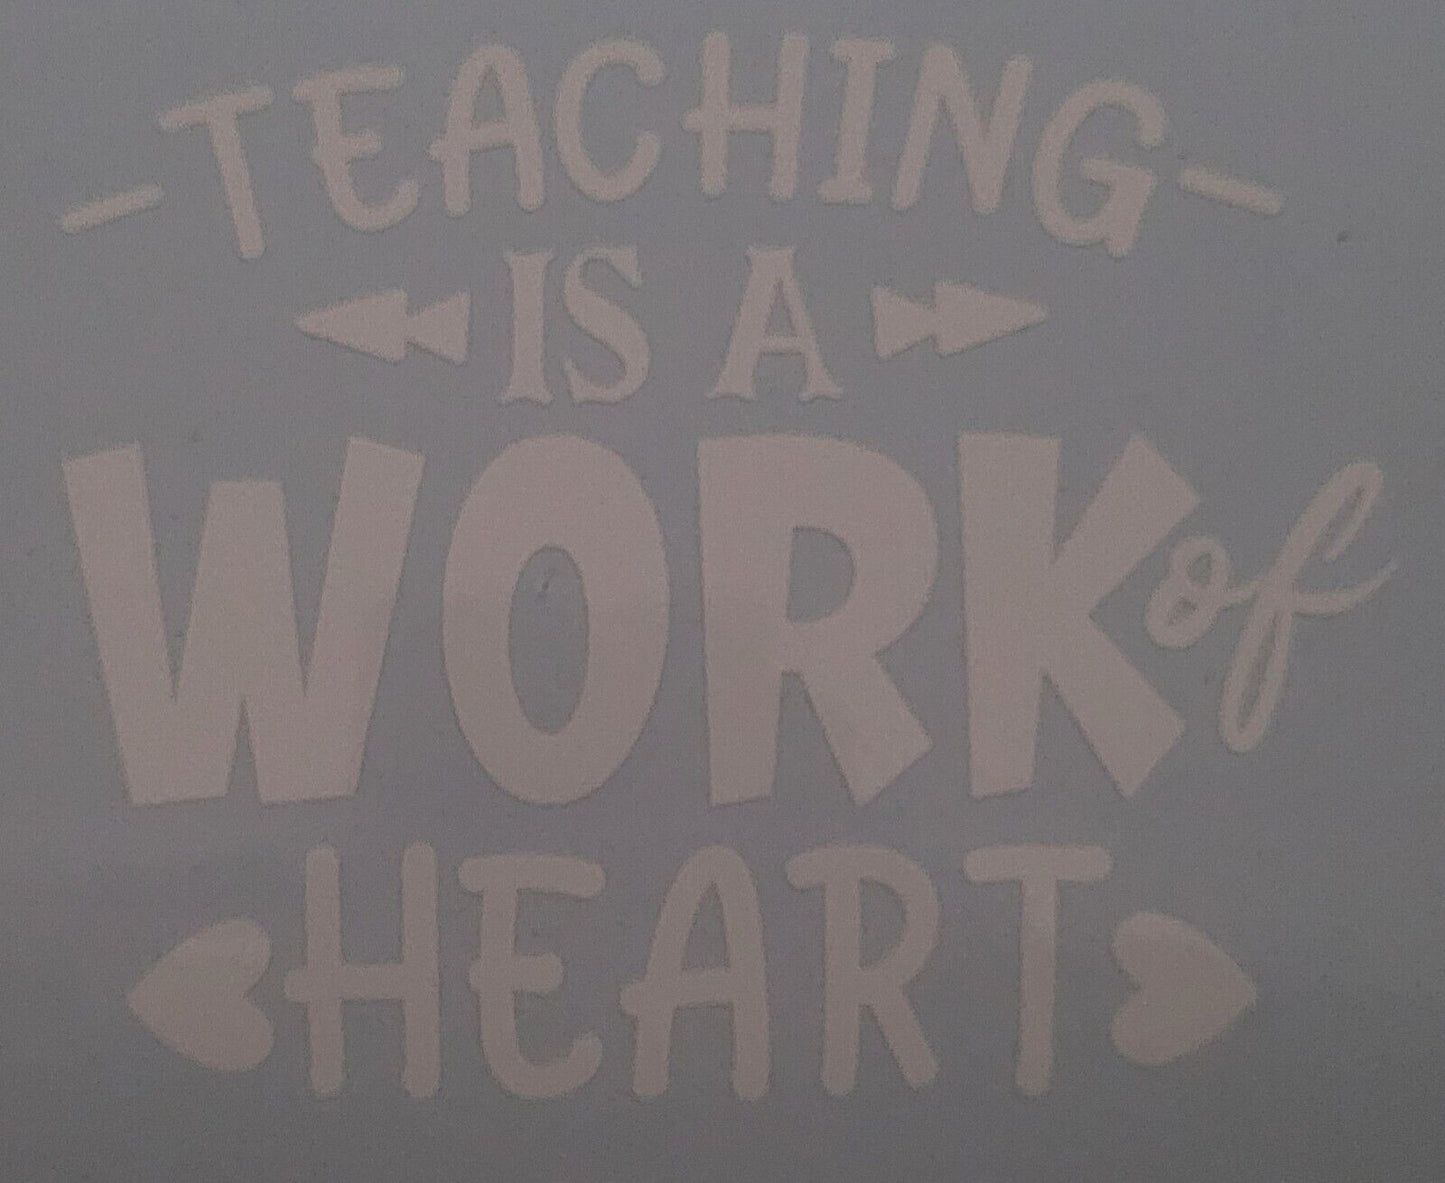 Teacher is a work of heart 10cm x 12cm Vinyl Sticker / decal